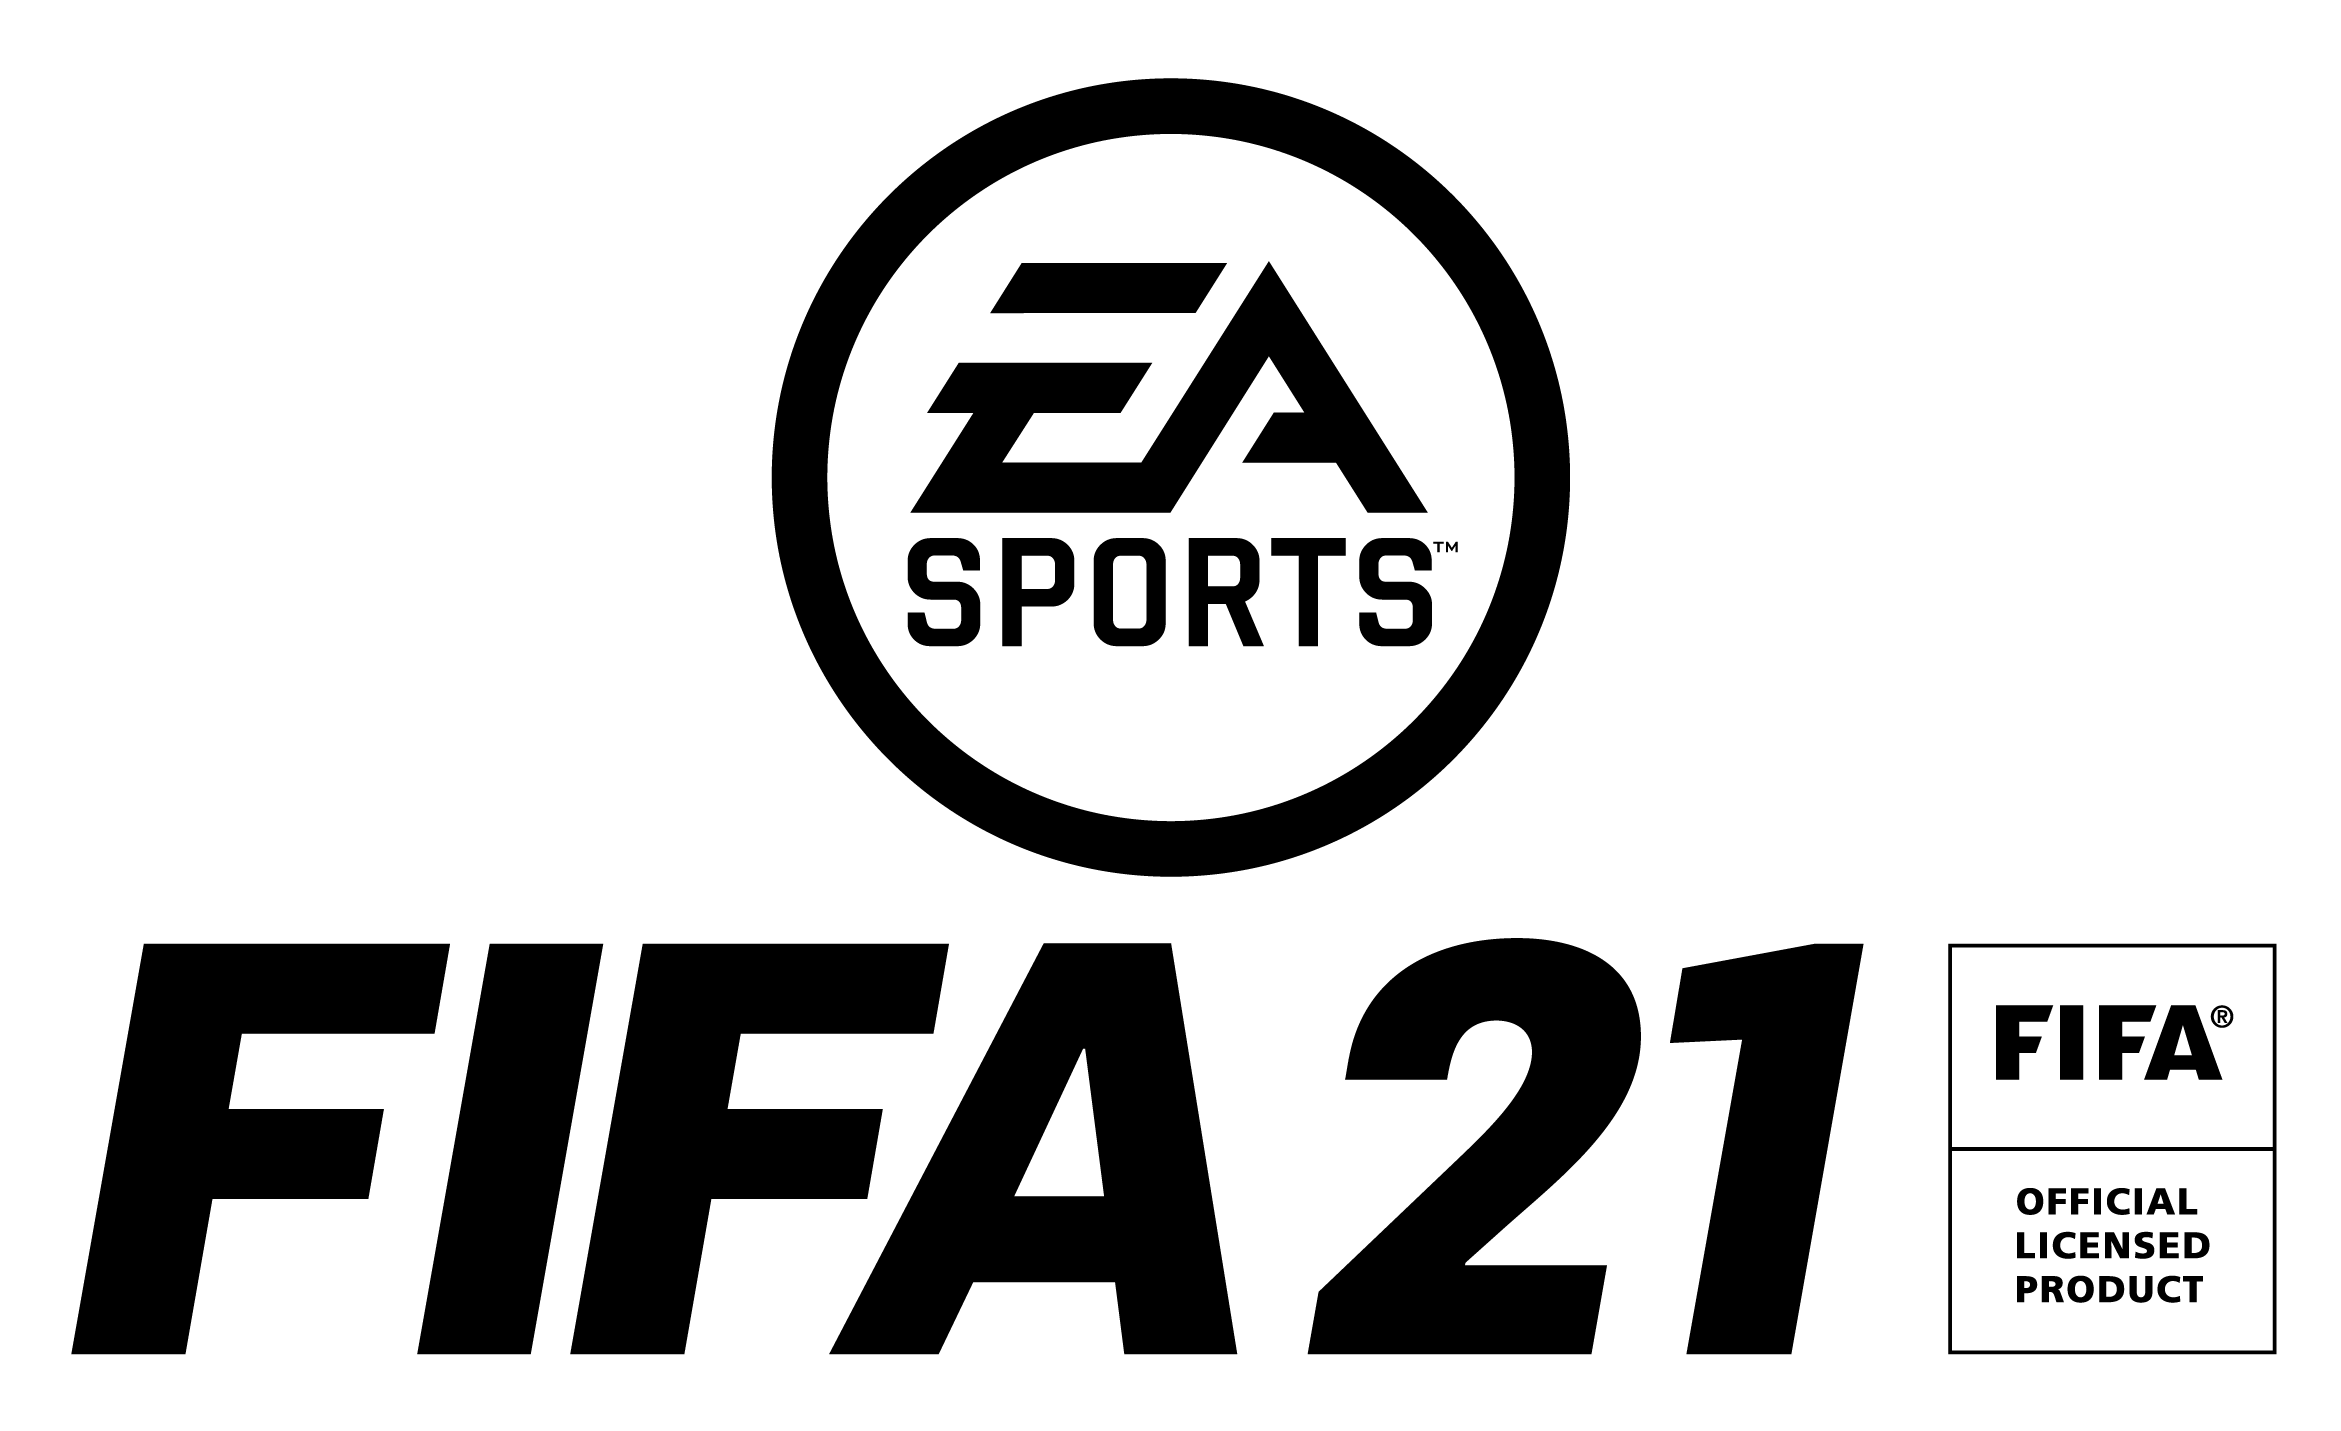 Fifa nsp. FIFA 2021 игра. ФИФА логотип. Логотип FIFA 22. Логотип EA Sports.